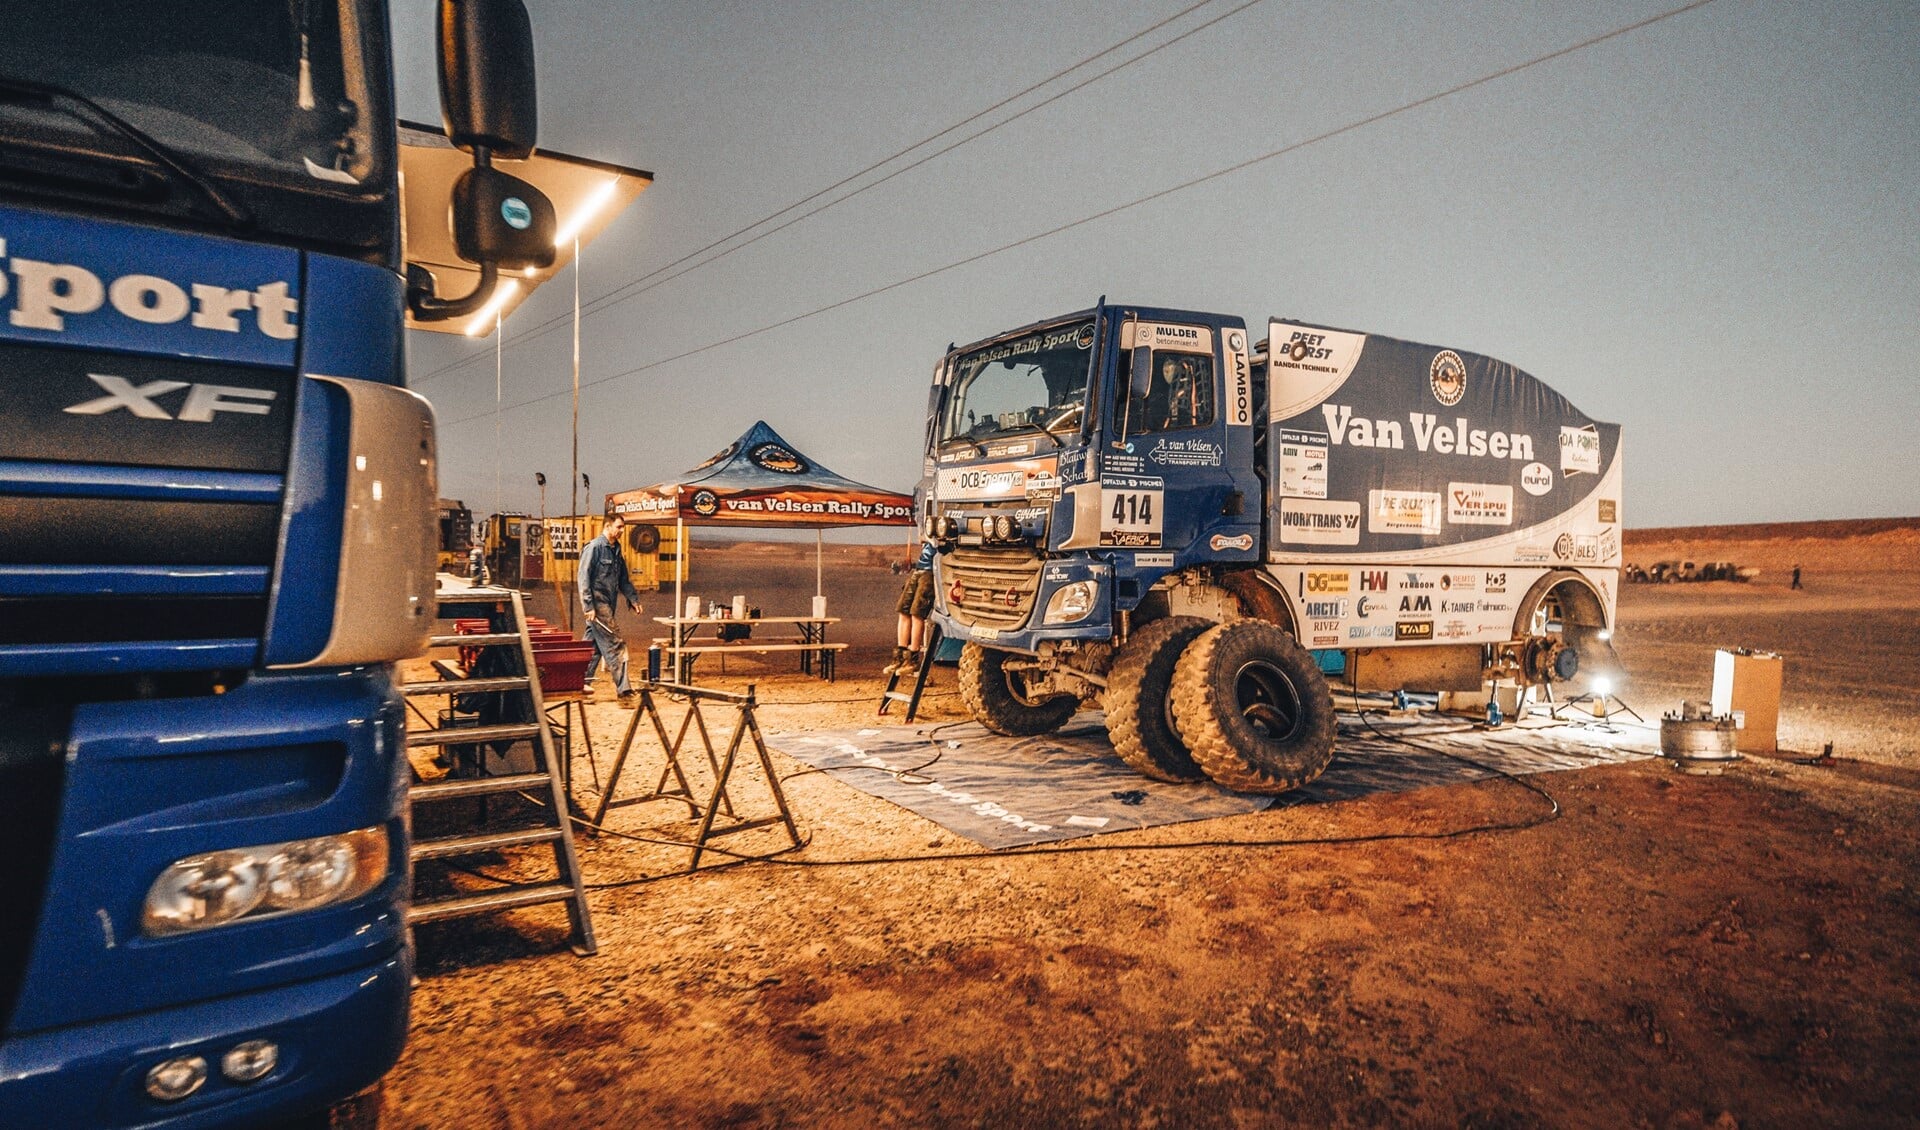 De rallytruck ‘het blauwe schatje’ van Van Velsen Rallysport in het bivak (foto: Alessio Corradini).